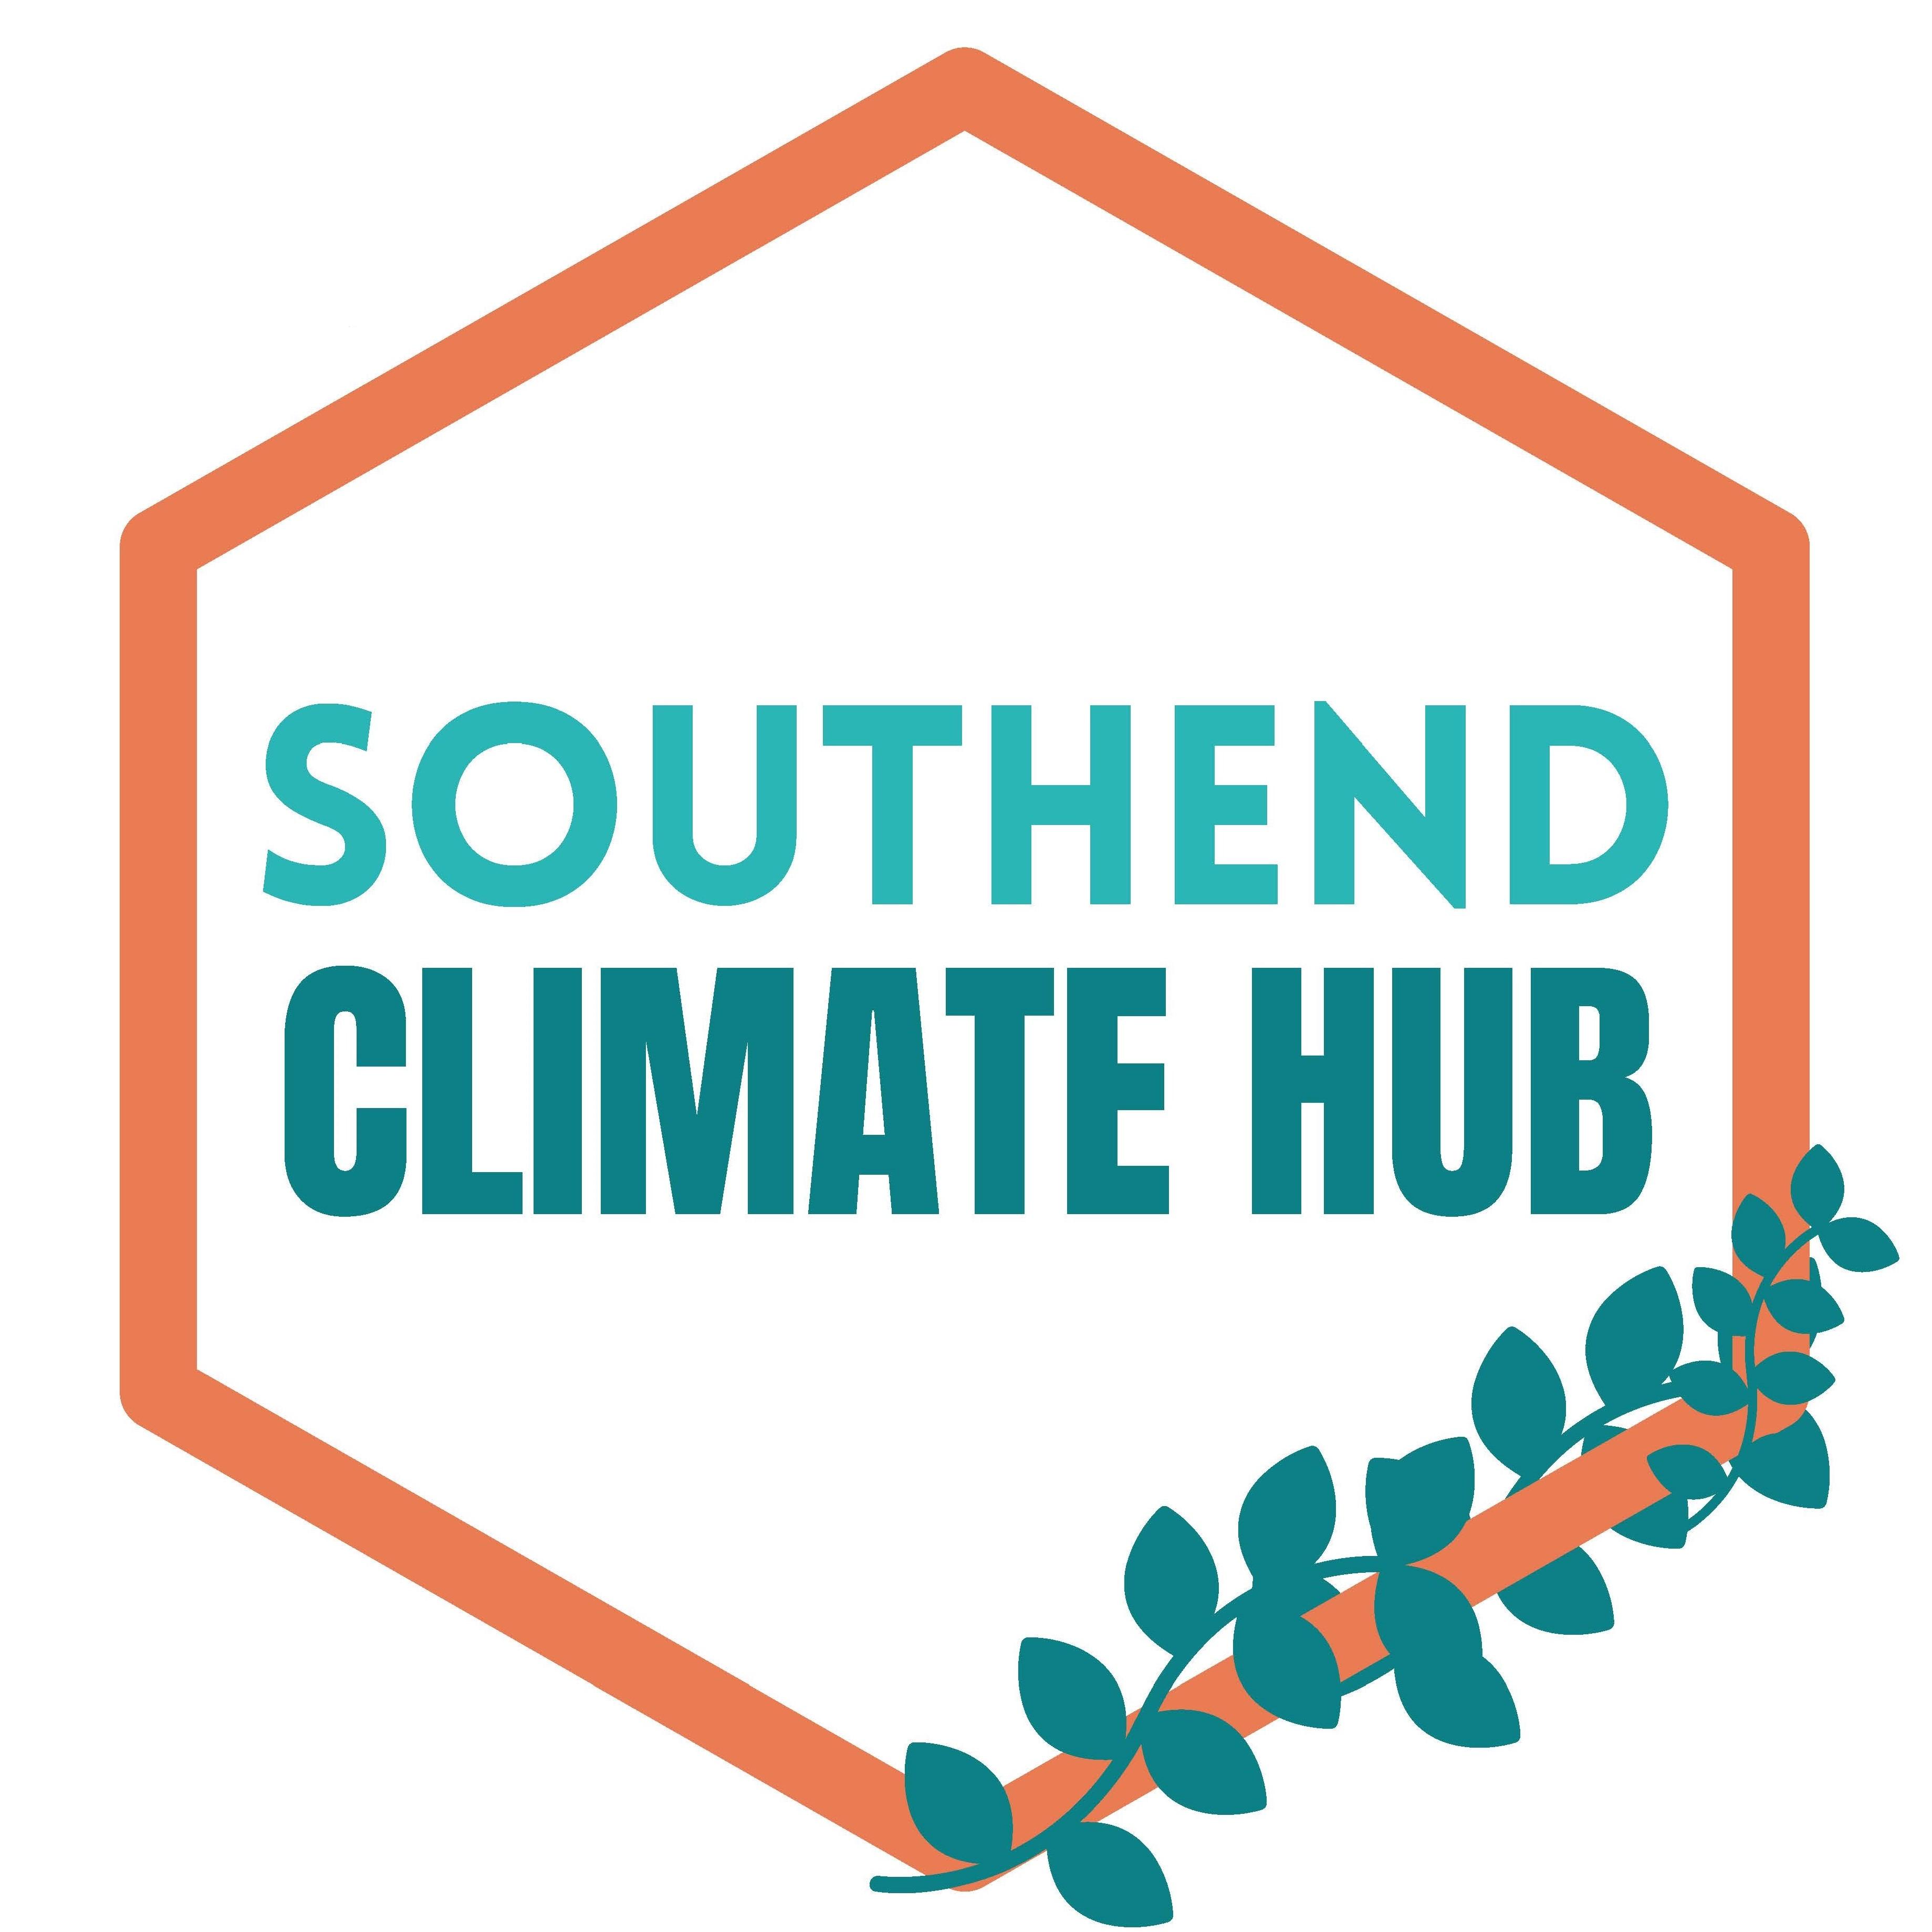 Southend Climate Hub logo.